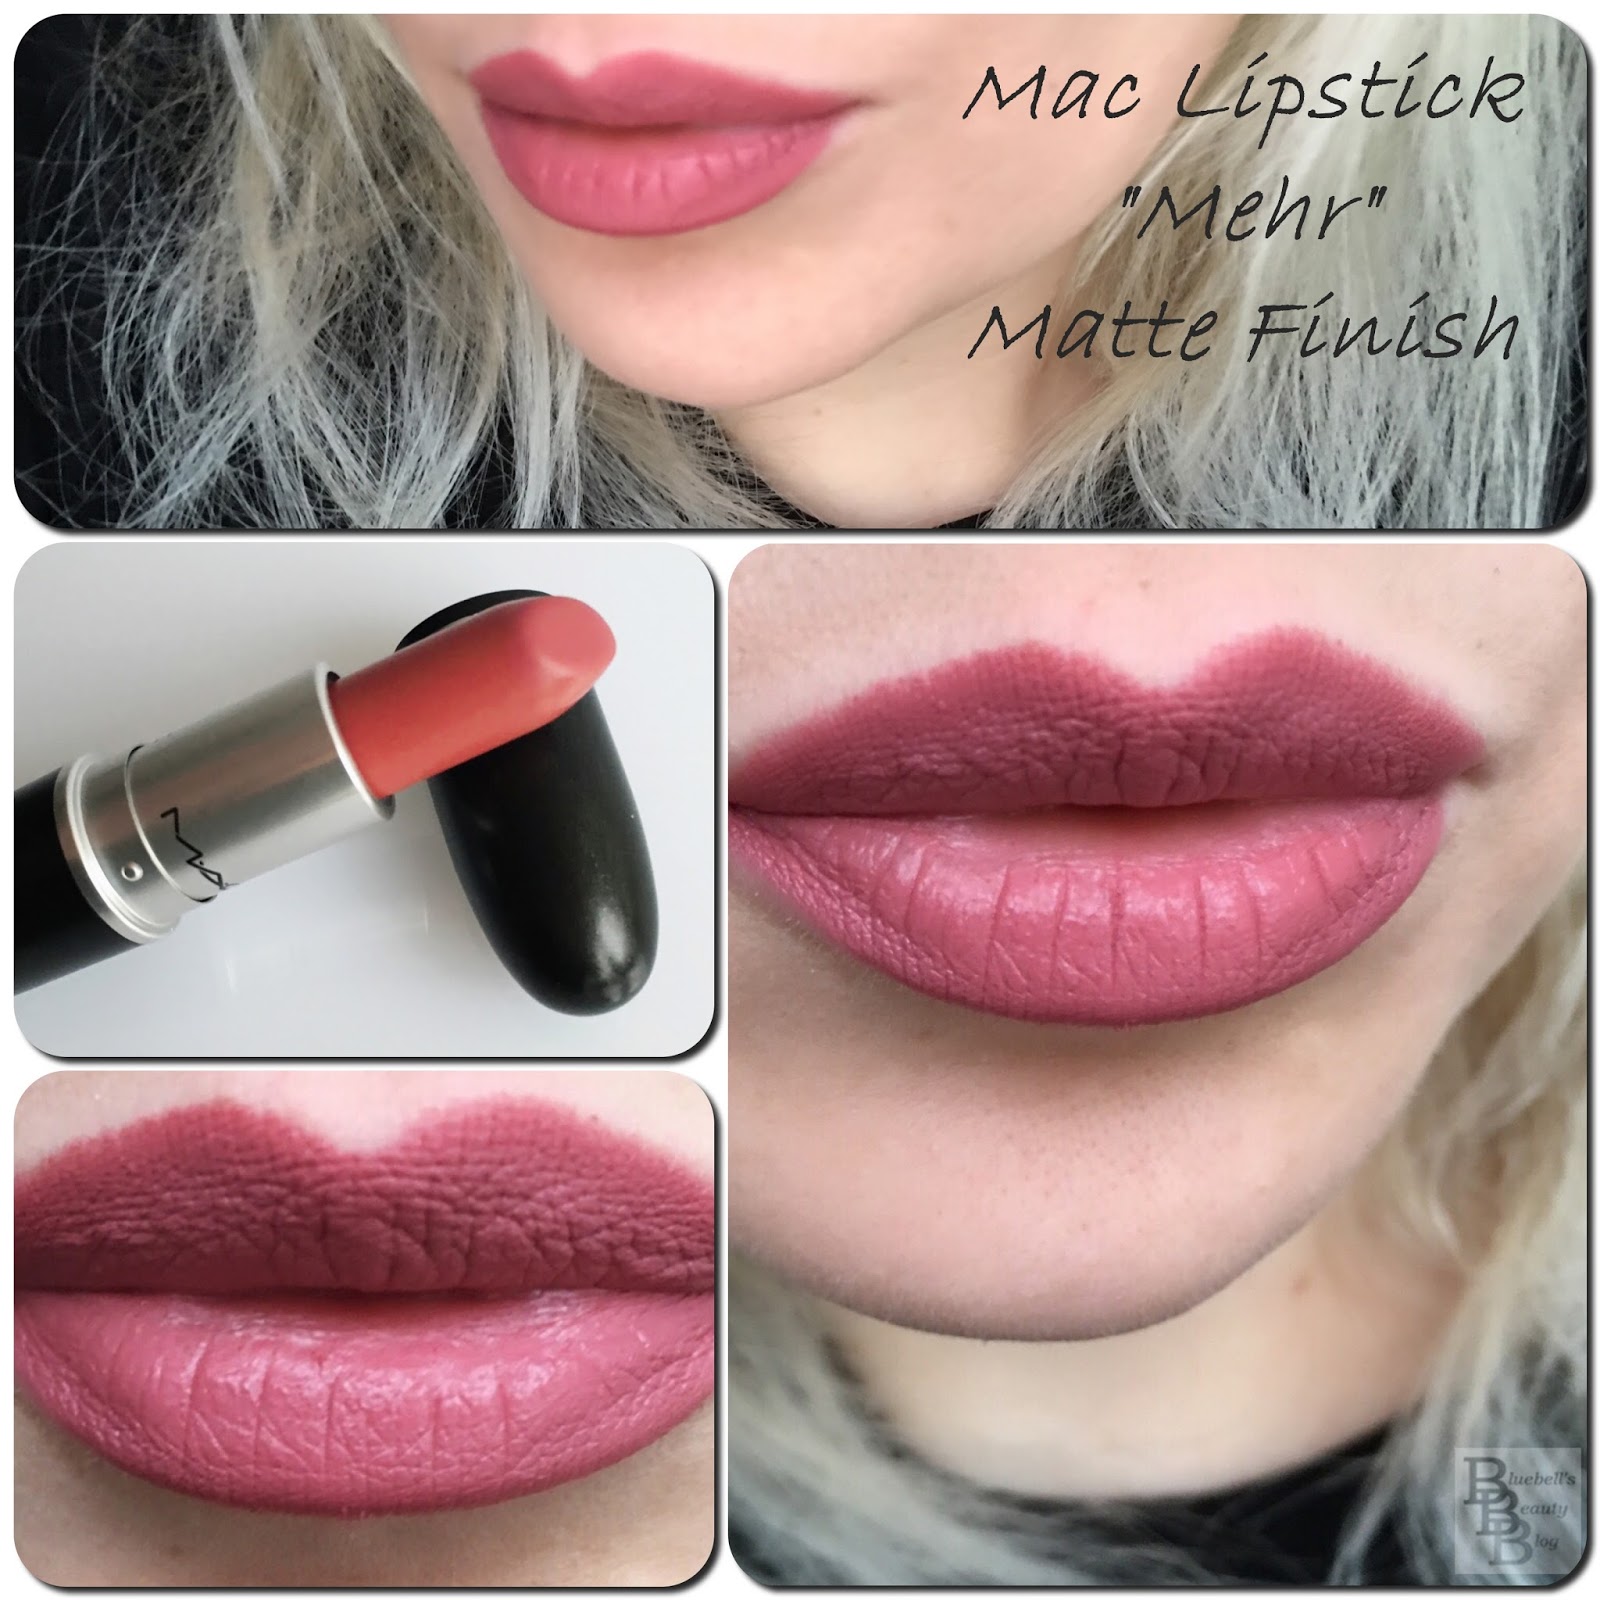 Mac Lipstick Mehr Swatch Tragebilder Und Vergleich Bluebell S Beauty Blog Bloglovin